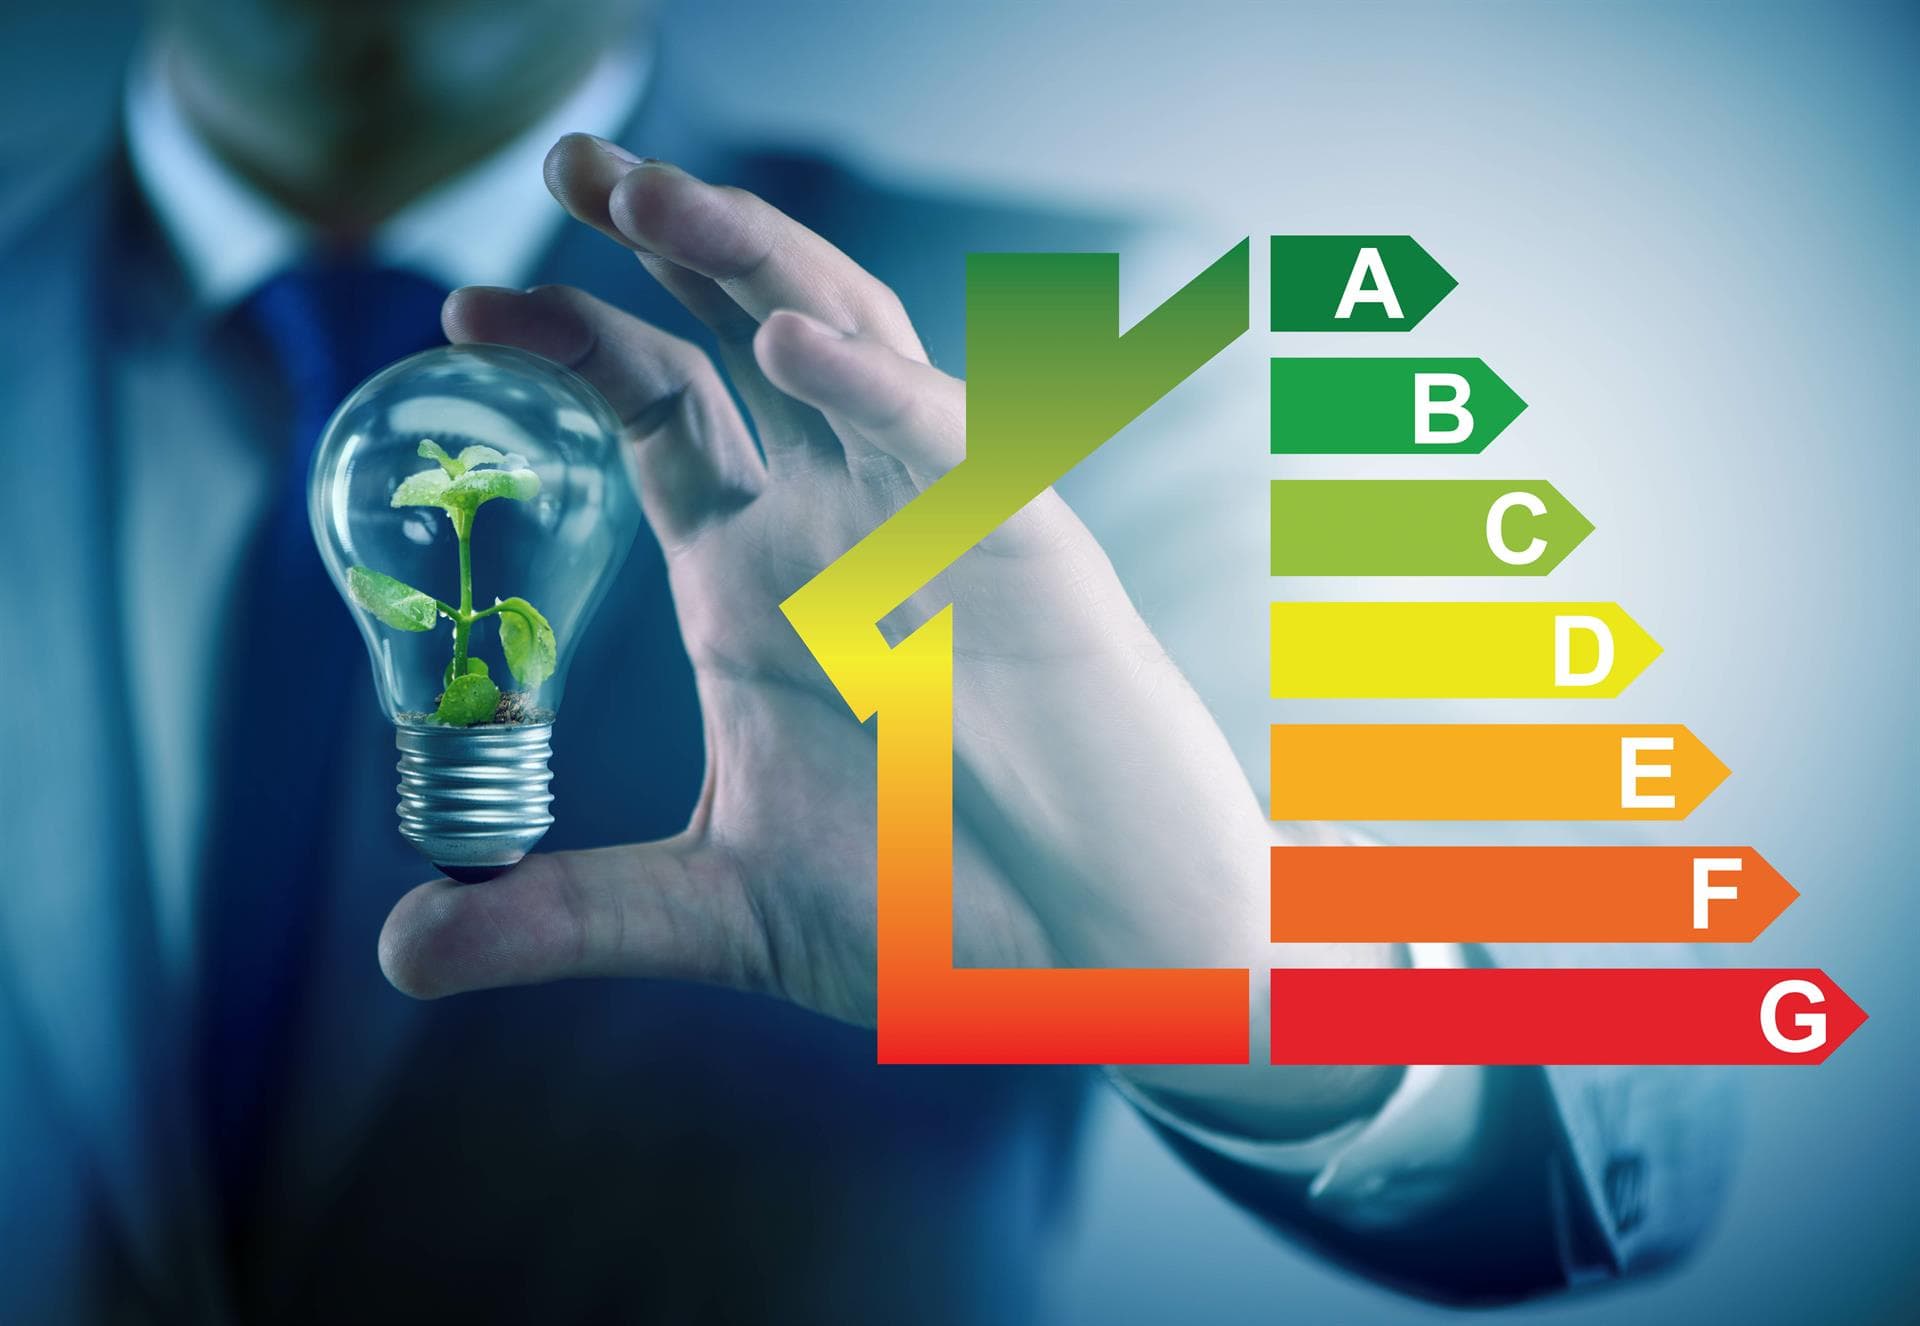 Certificado de eficiencia energética para viviendas